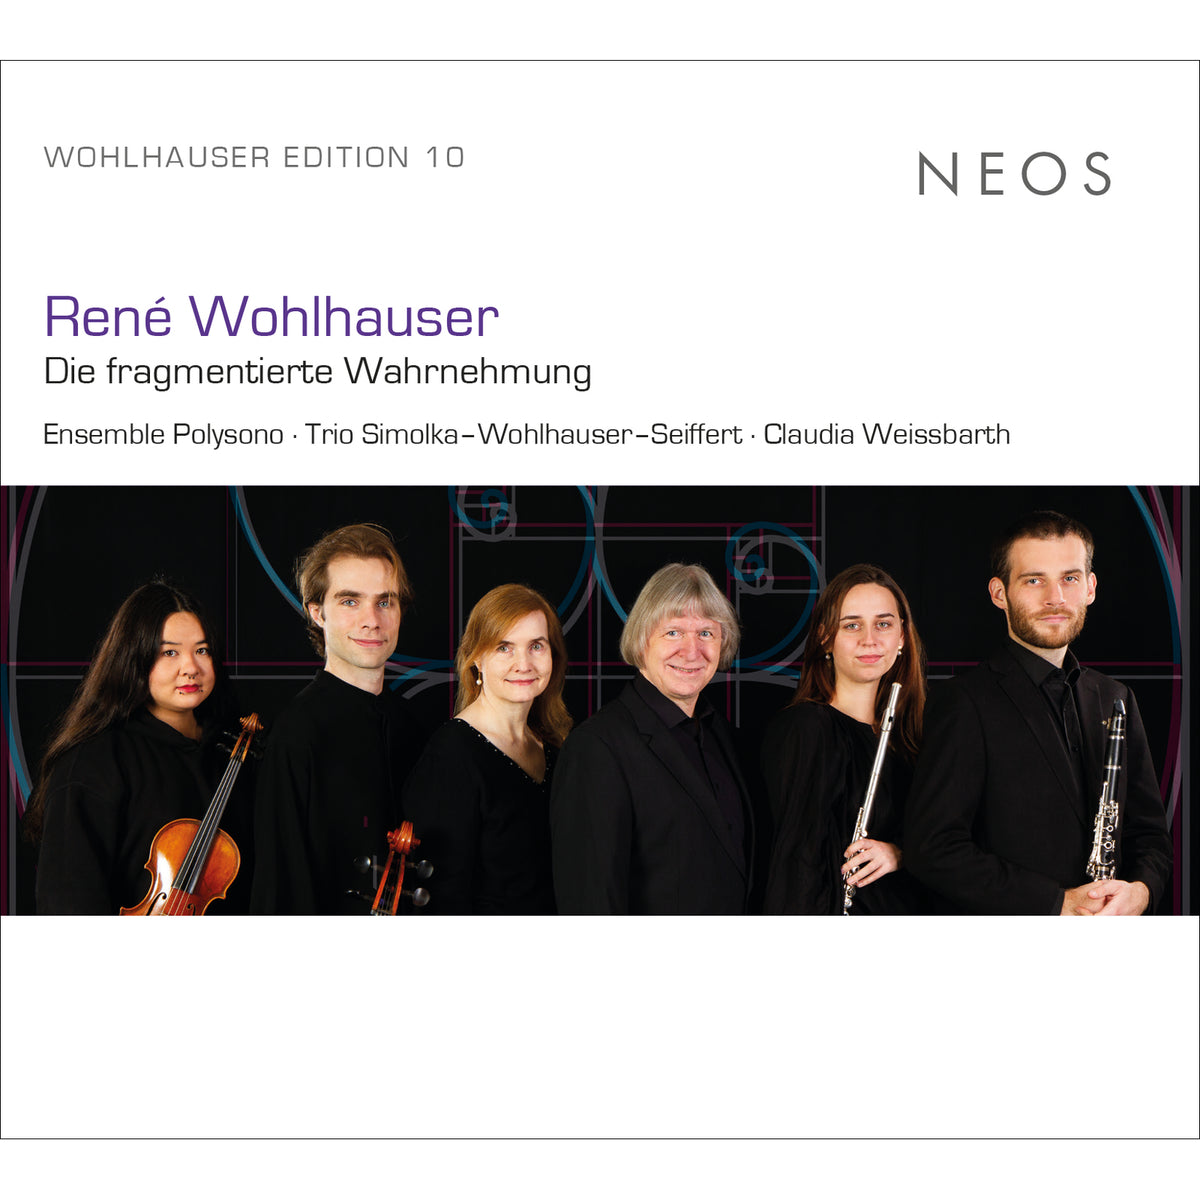 Ensemble Polysono, Trio Simolka-Wohlhauser-Seiffert, Claudia Weissbarth - Rene Wohlhauser: Die fragmentierte Wahrnehmung - NEOS12329